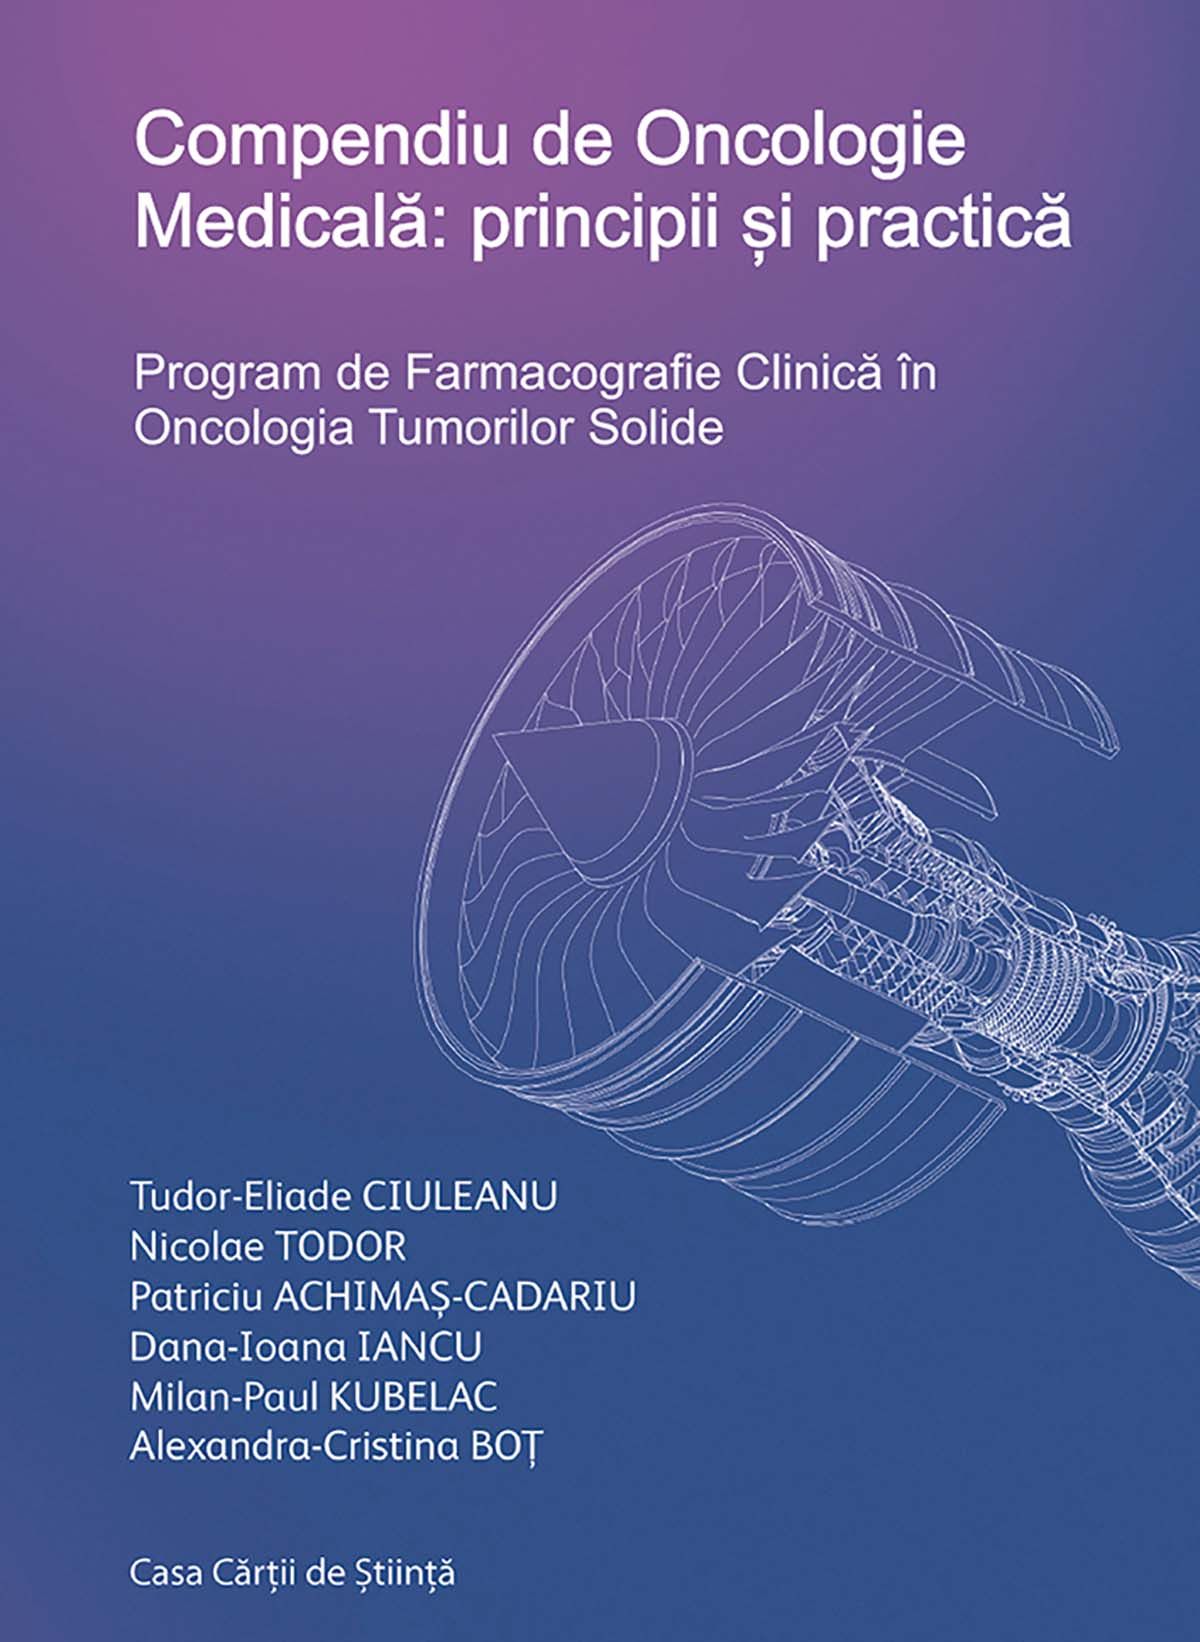 Principii și practică în oncologia clinică